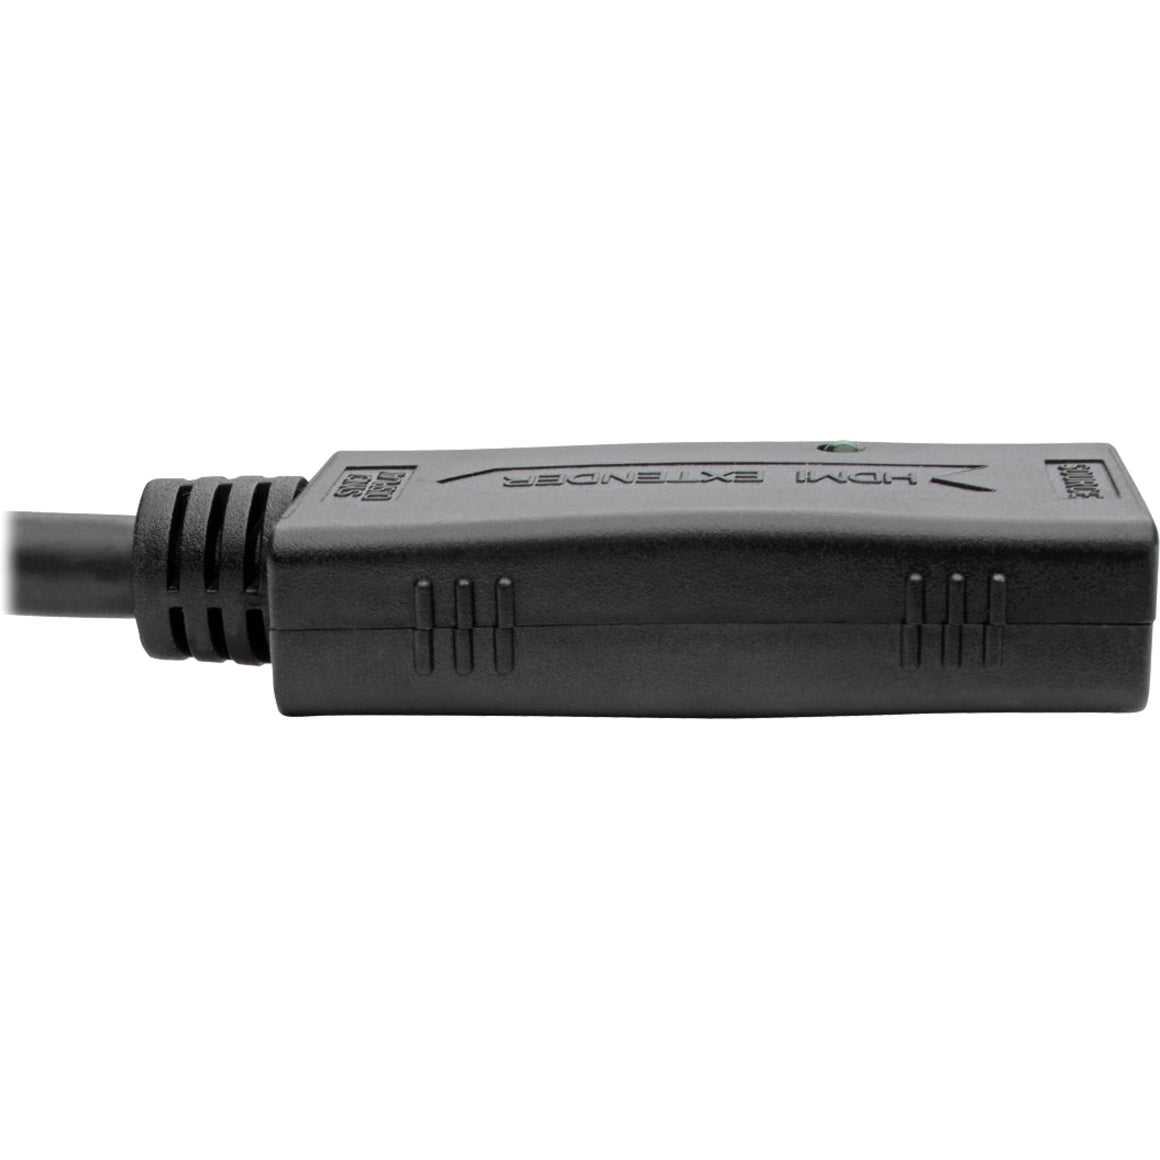 تريب لايت B123-001 كابل تمديد HDMI نشطة ، 1 قدم ، موصل نحاسي ، متوافق مع TAA ، المنشأ تايوان